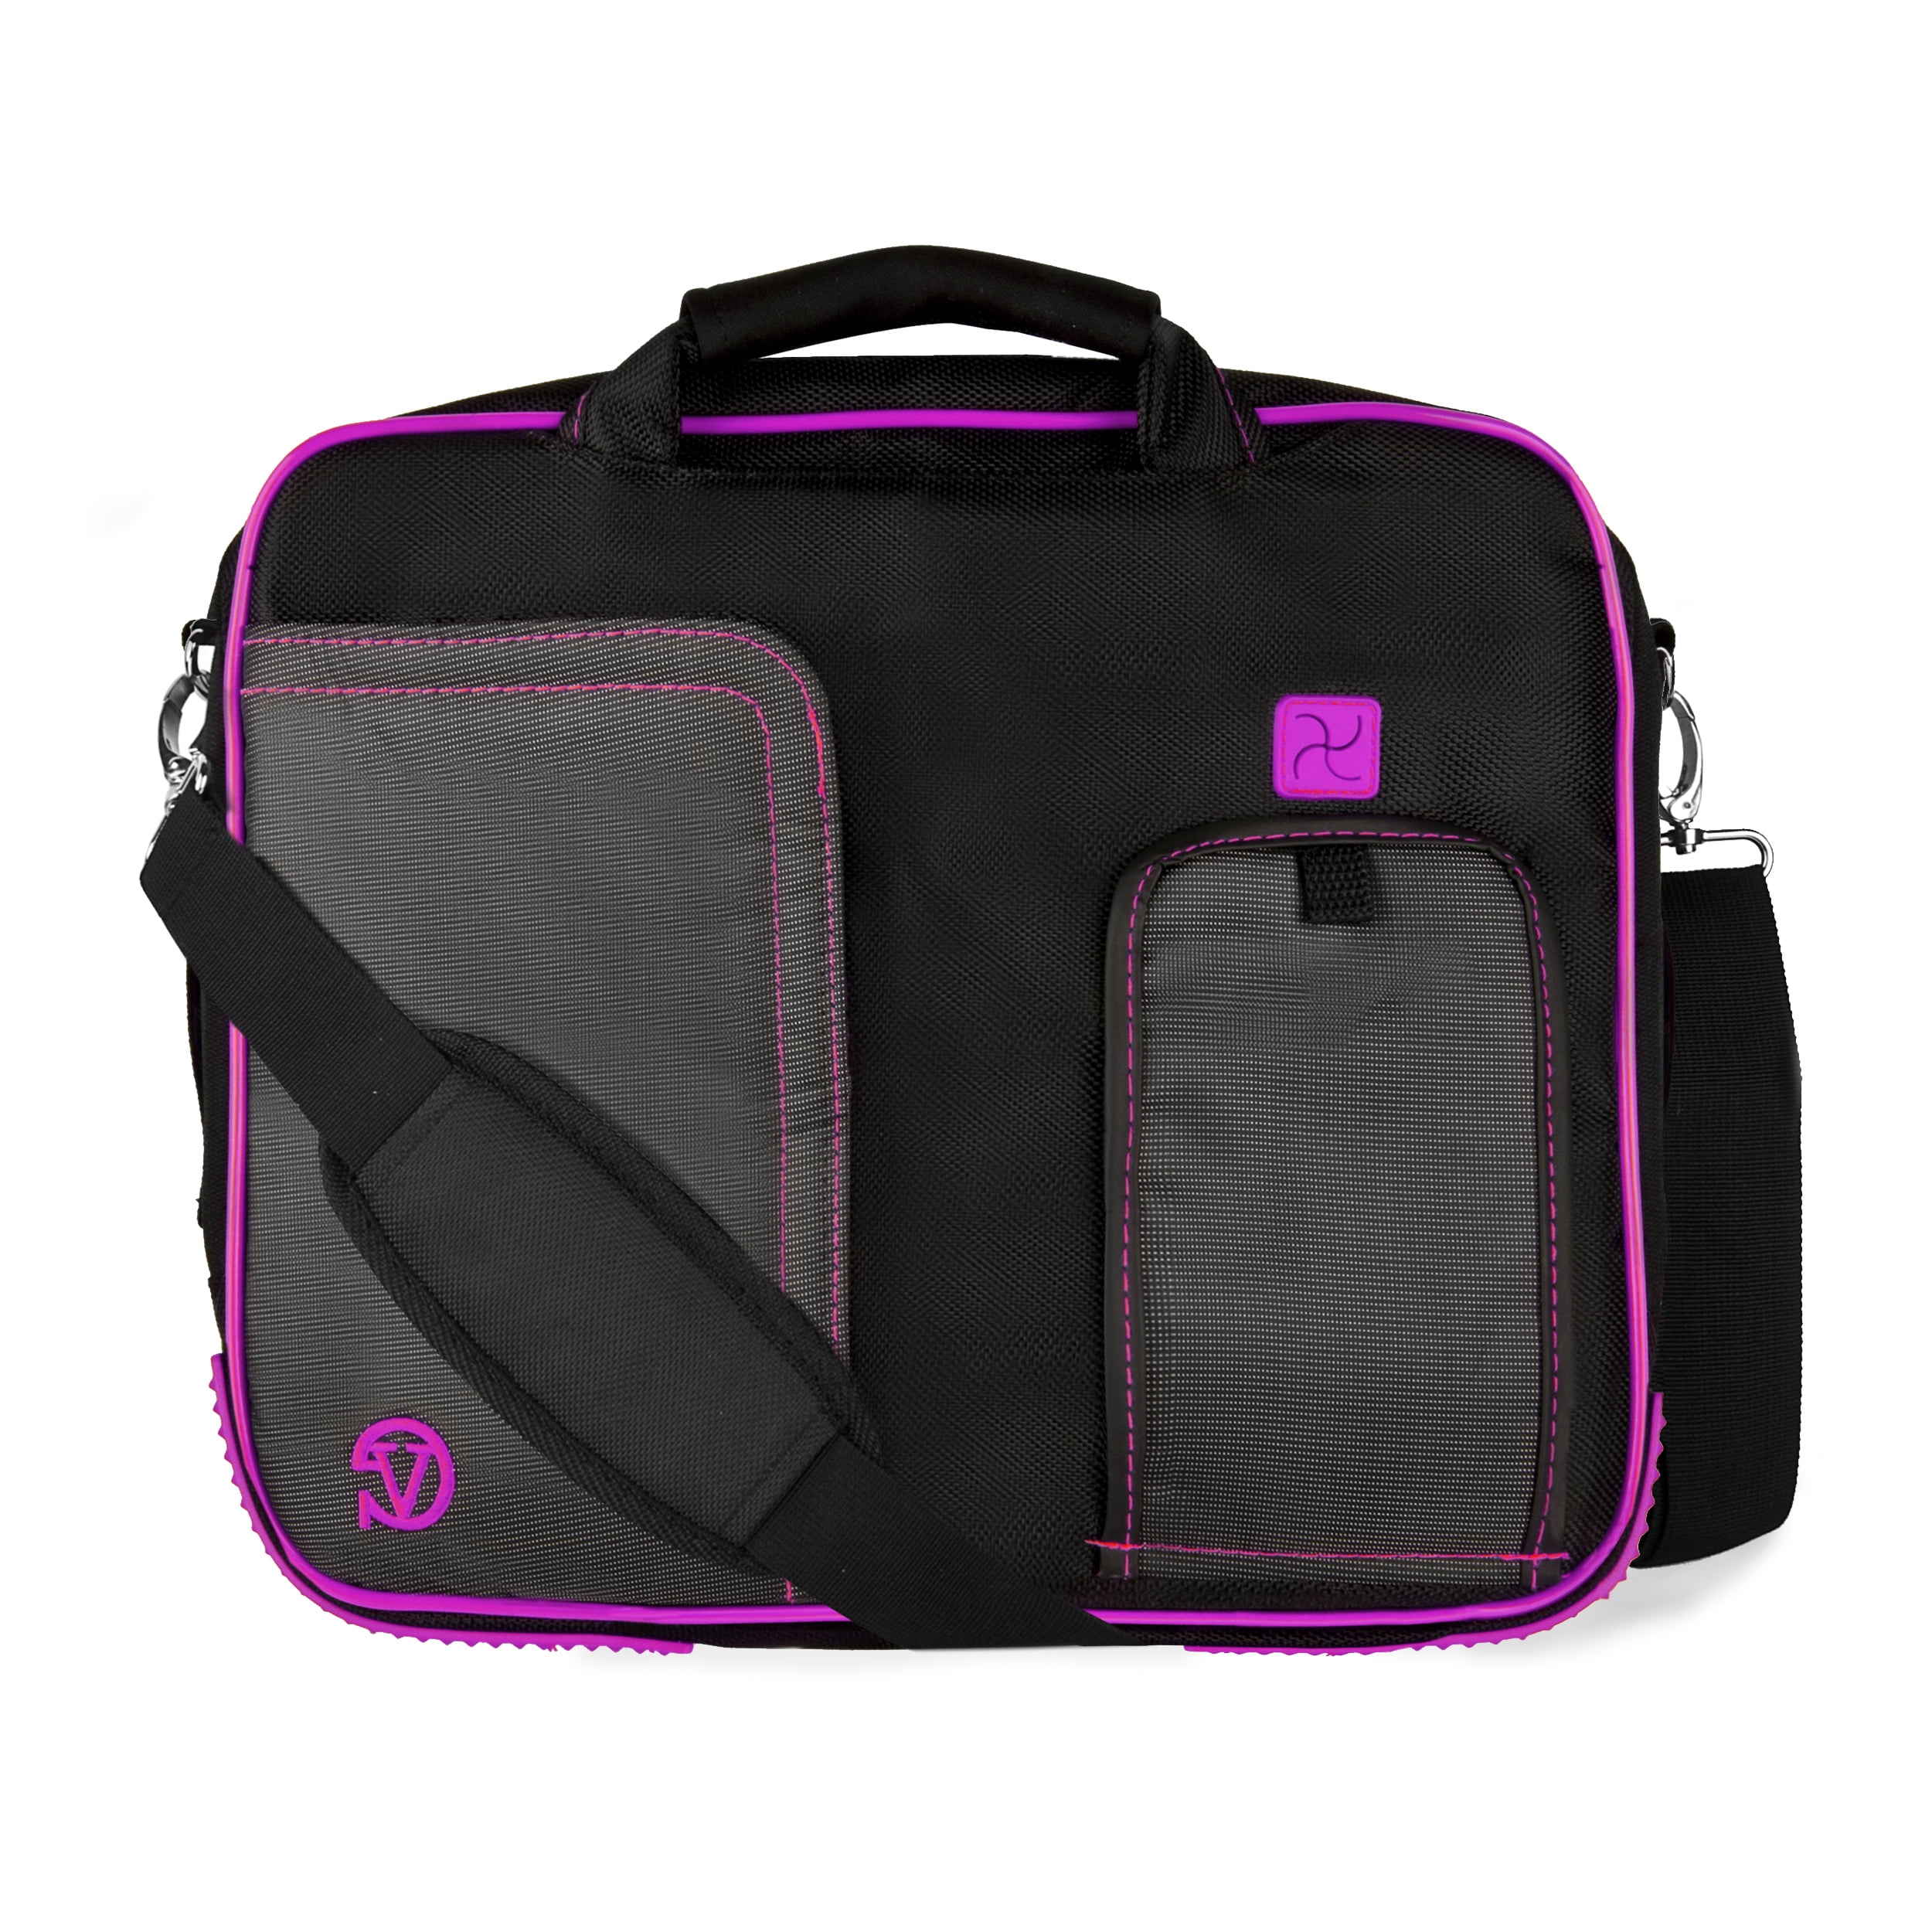 Ytonet 17 inch Laptop Shoulder Bag, Waterproof Business Messenger 